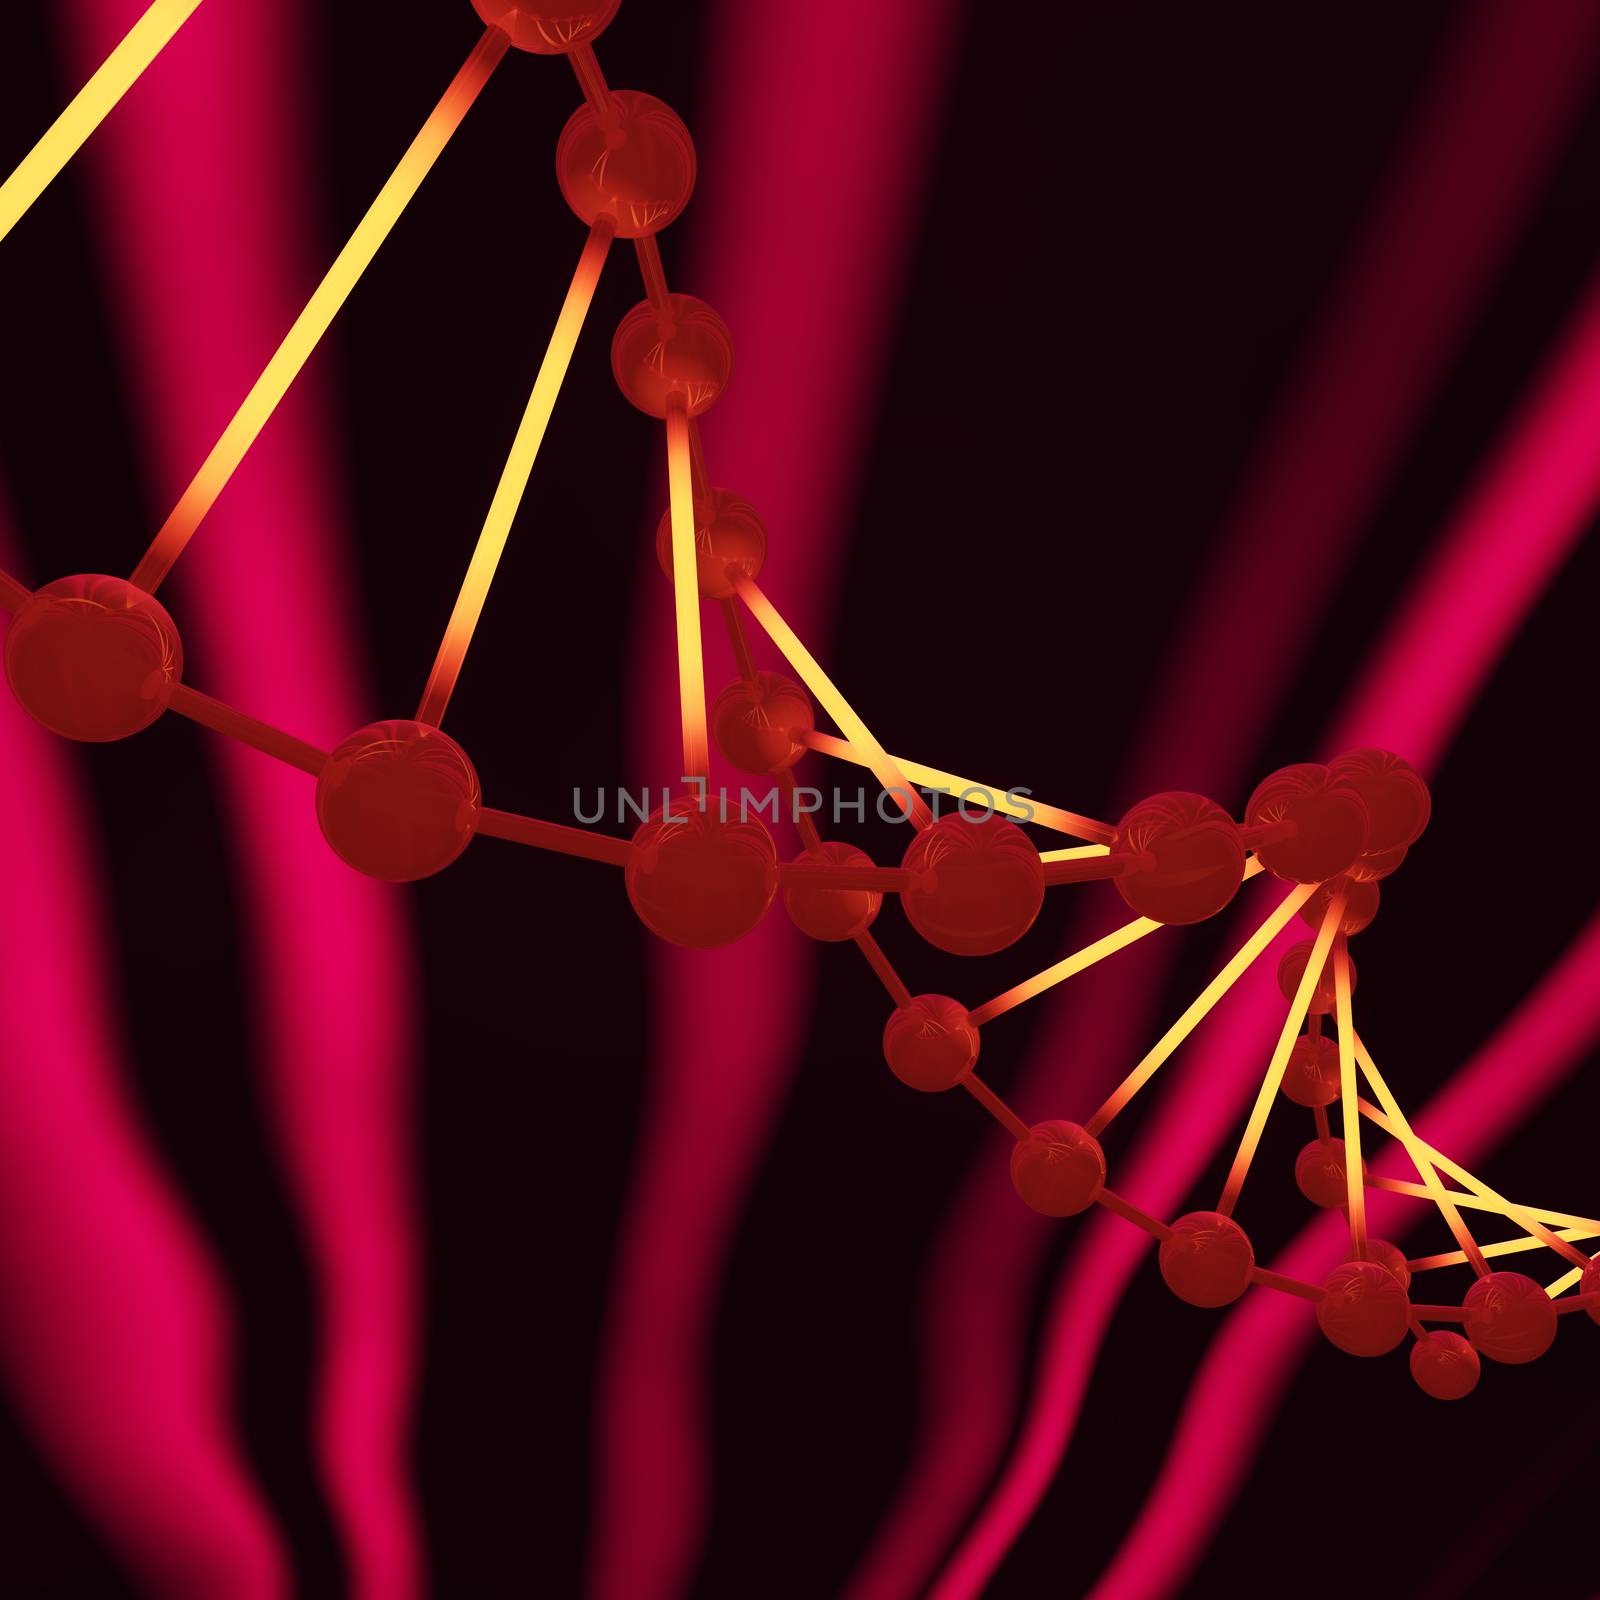 Digital Illustration of the DNA